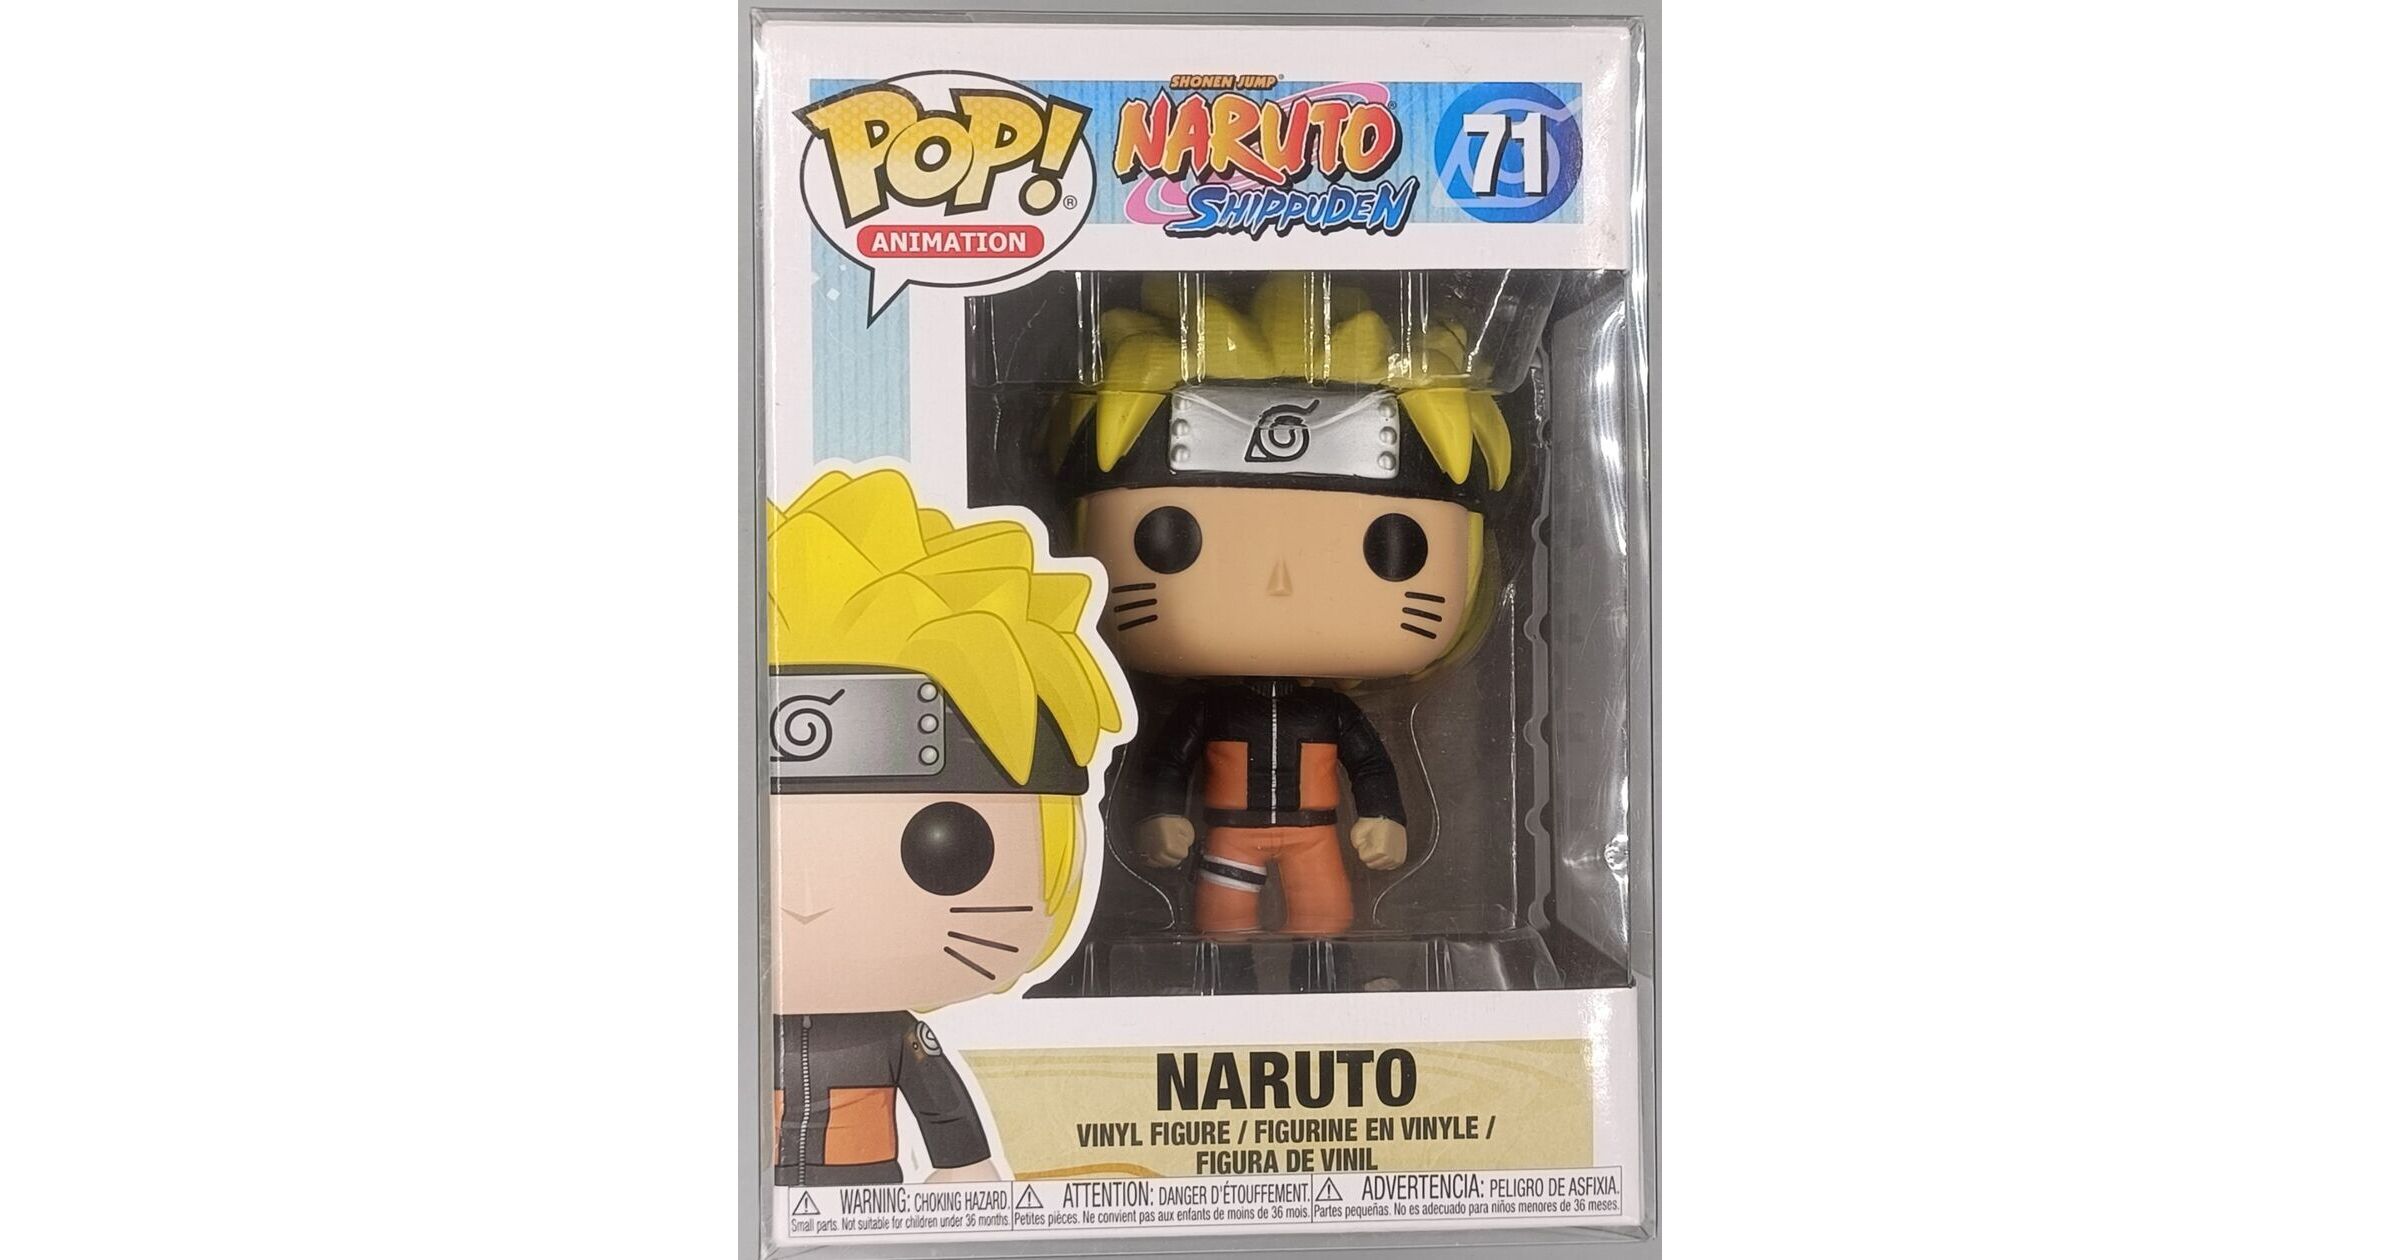 Figurine Naruto / Naruto / Funko Pop Animation 71